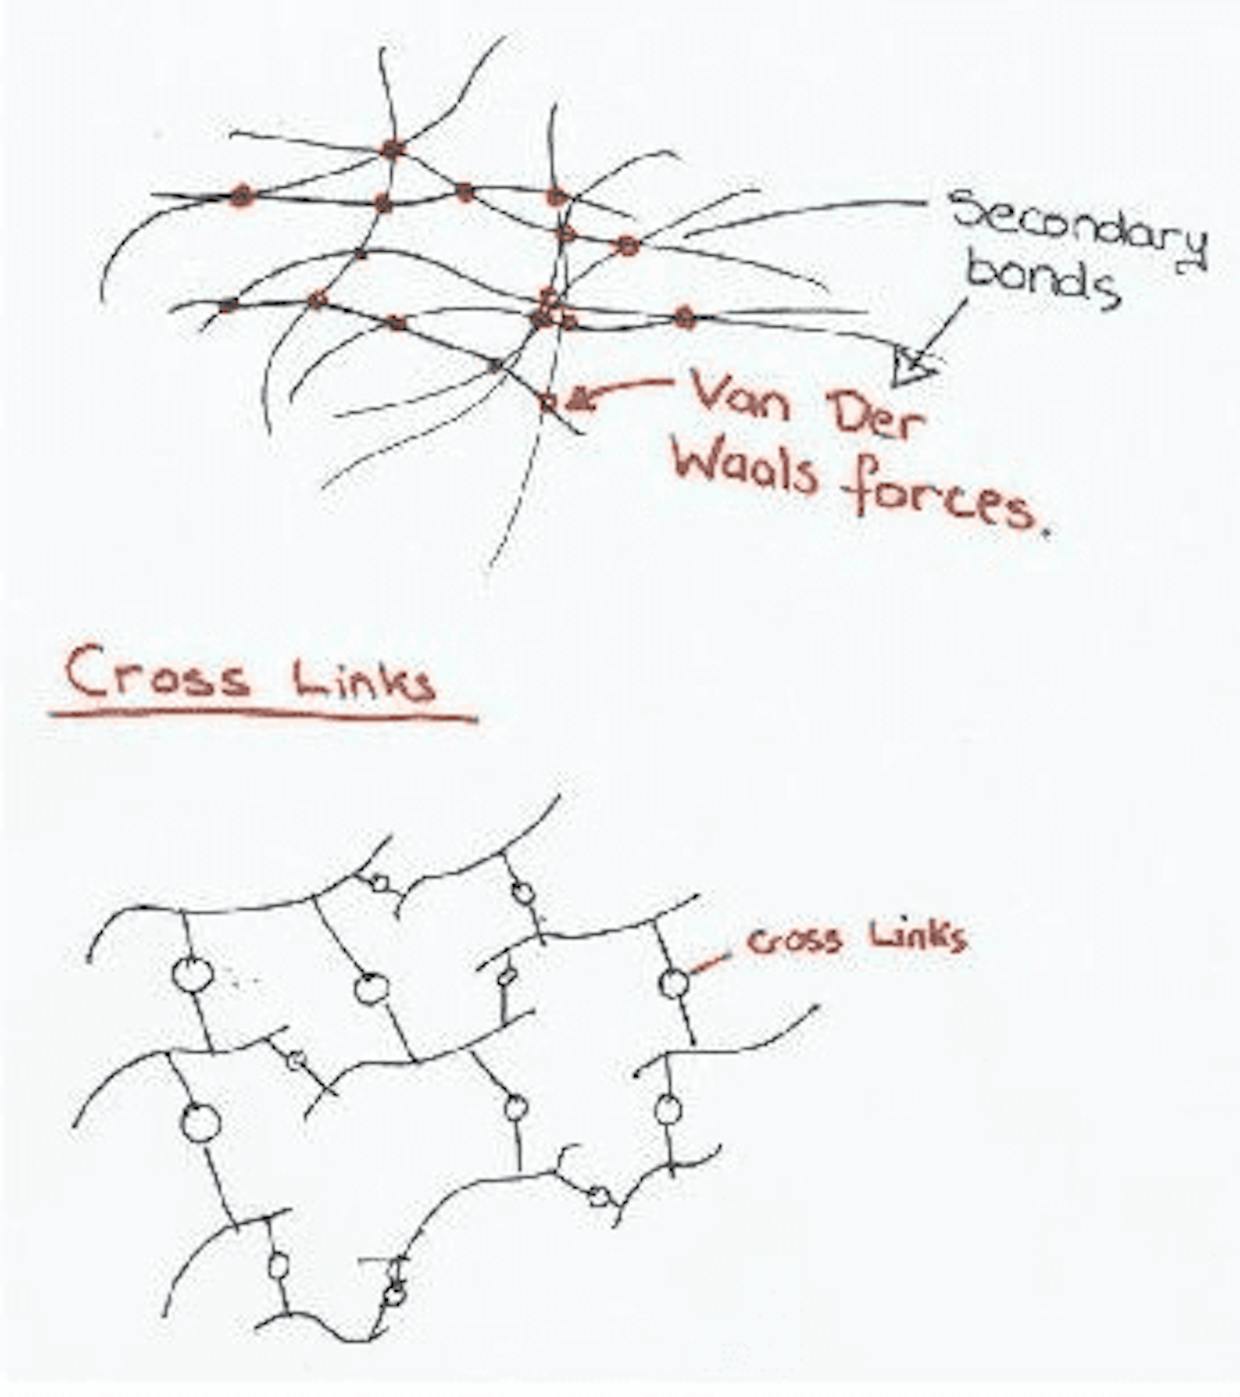 Van Der Waals Forces vs. Cross Links